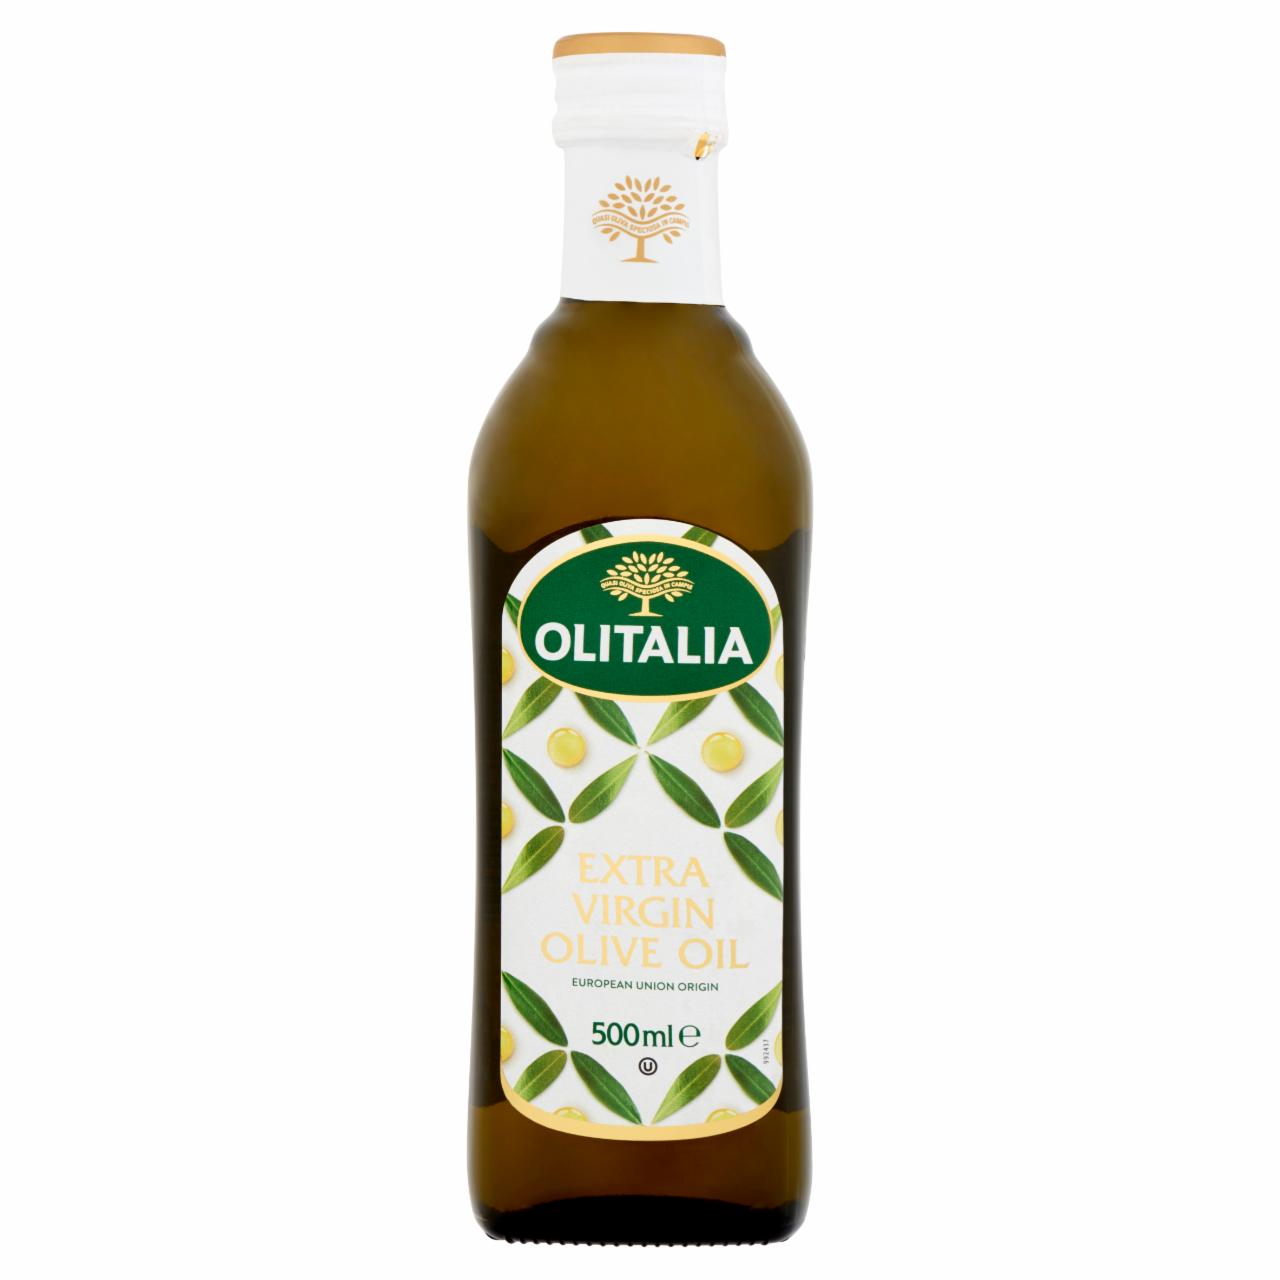 Képek - Olitalia extra szűz olívaolaj 500 ml